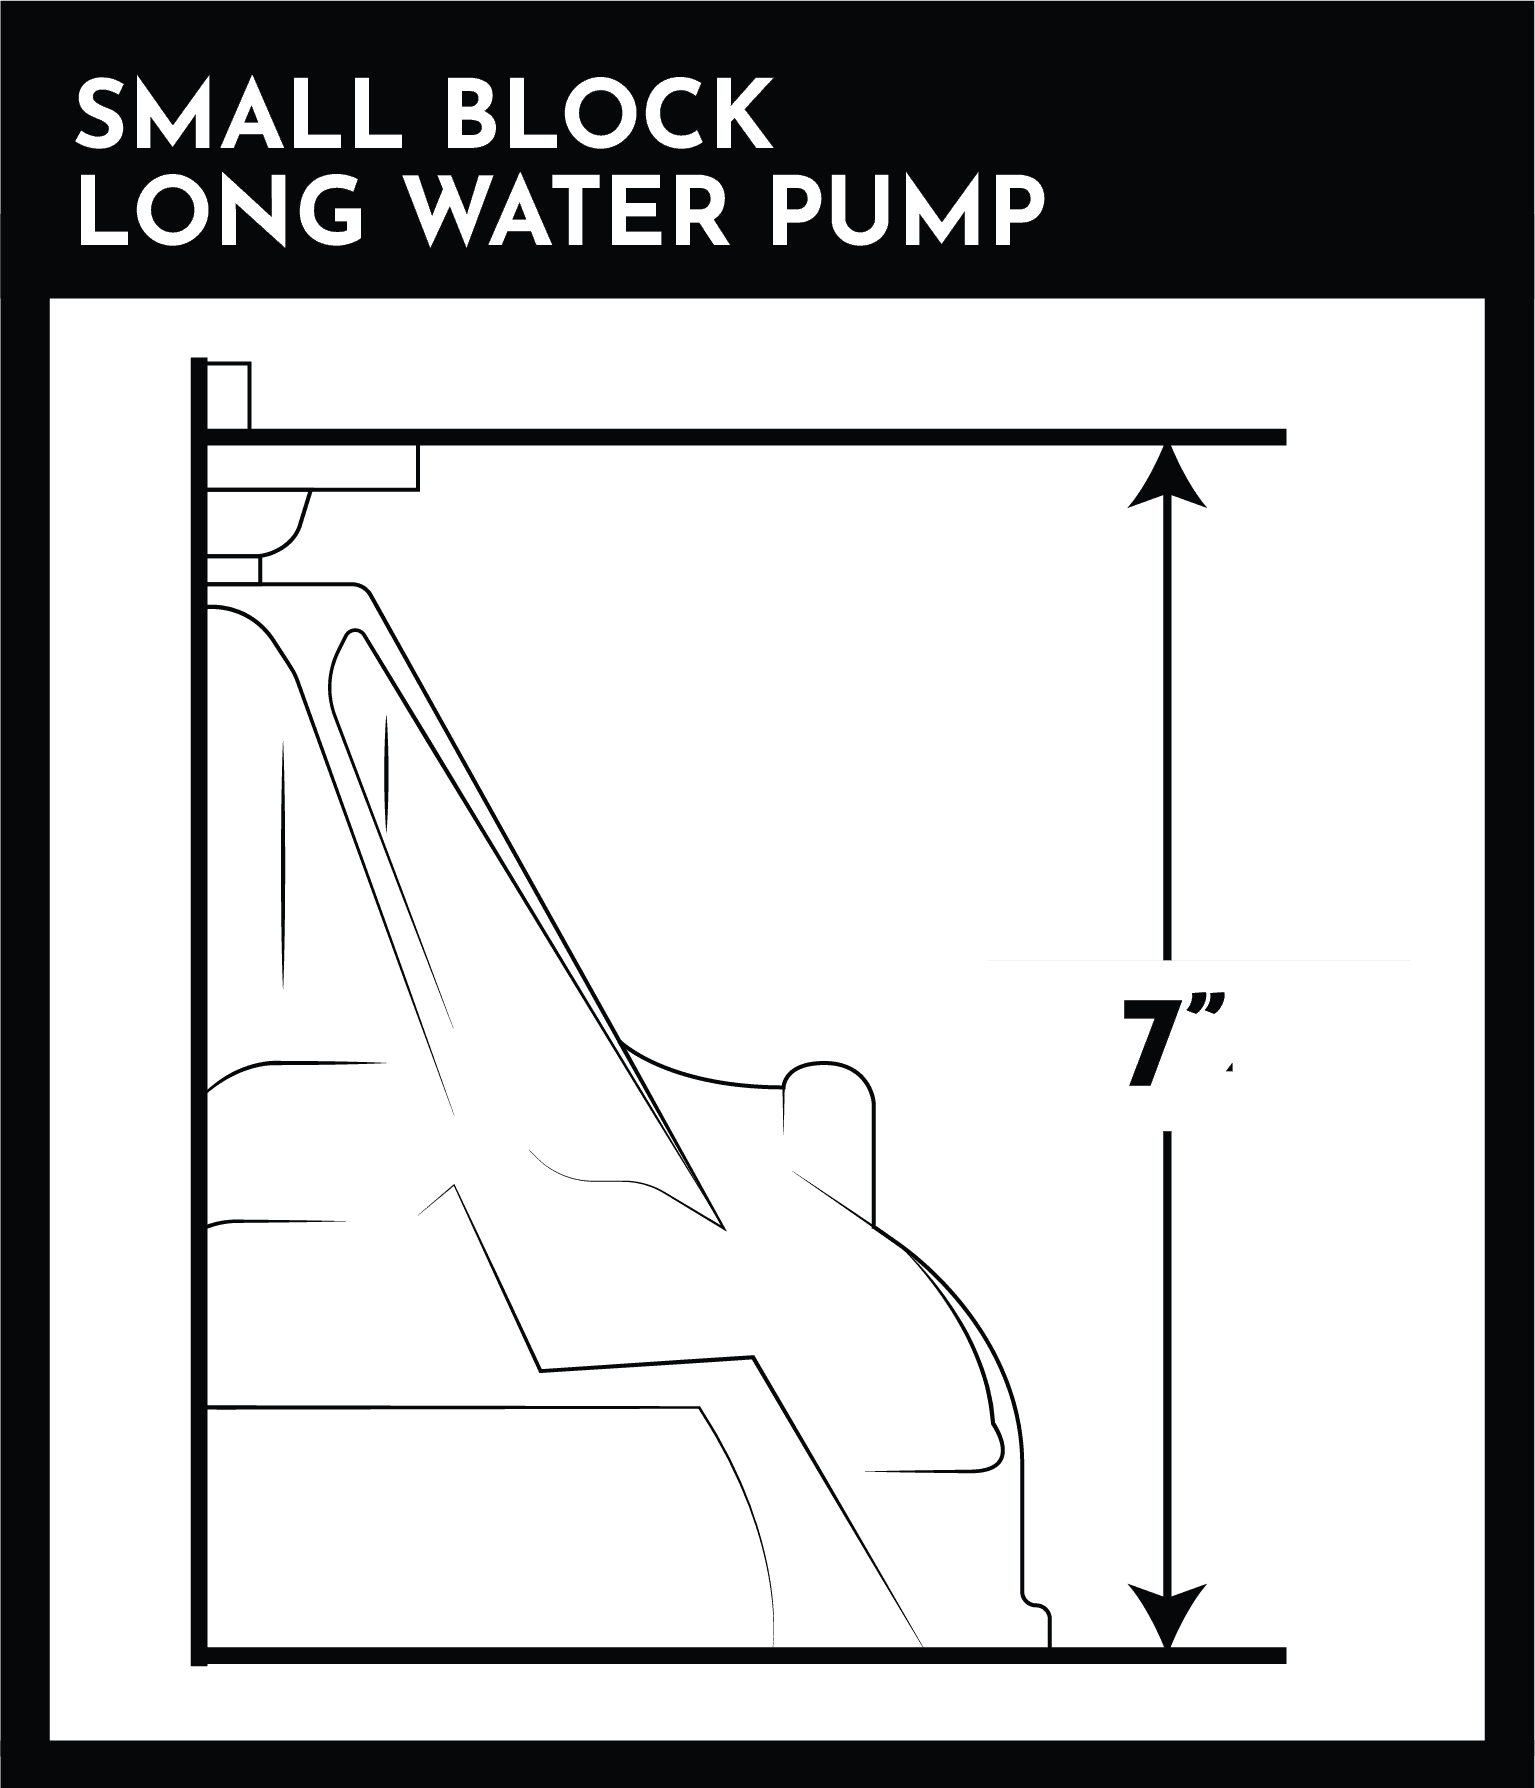 SMALL BLOCK LONG WATER PUMP